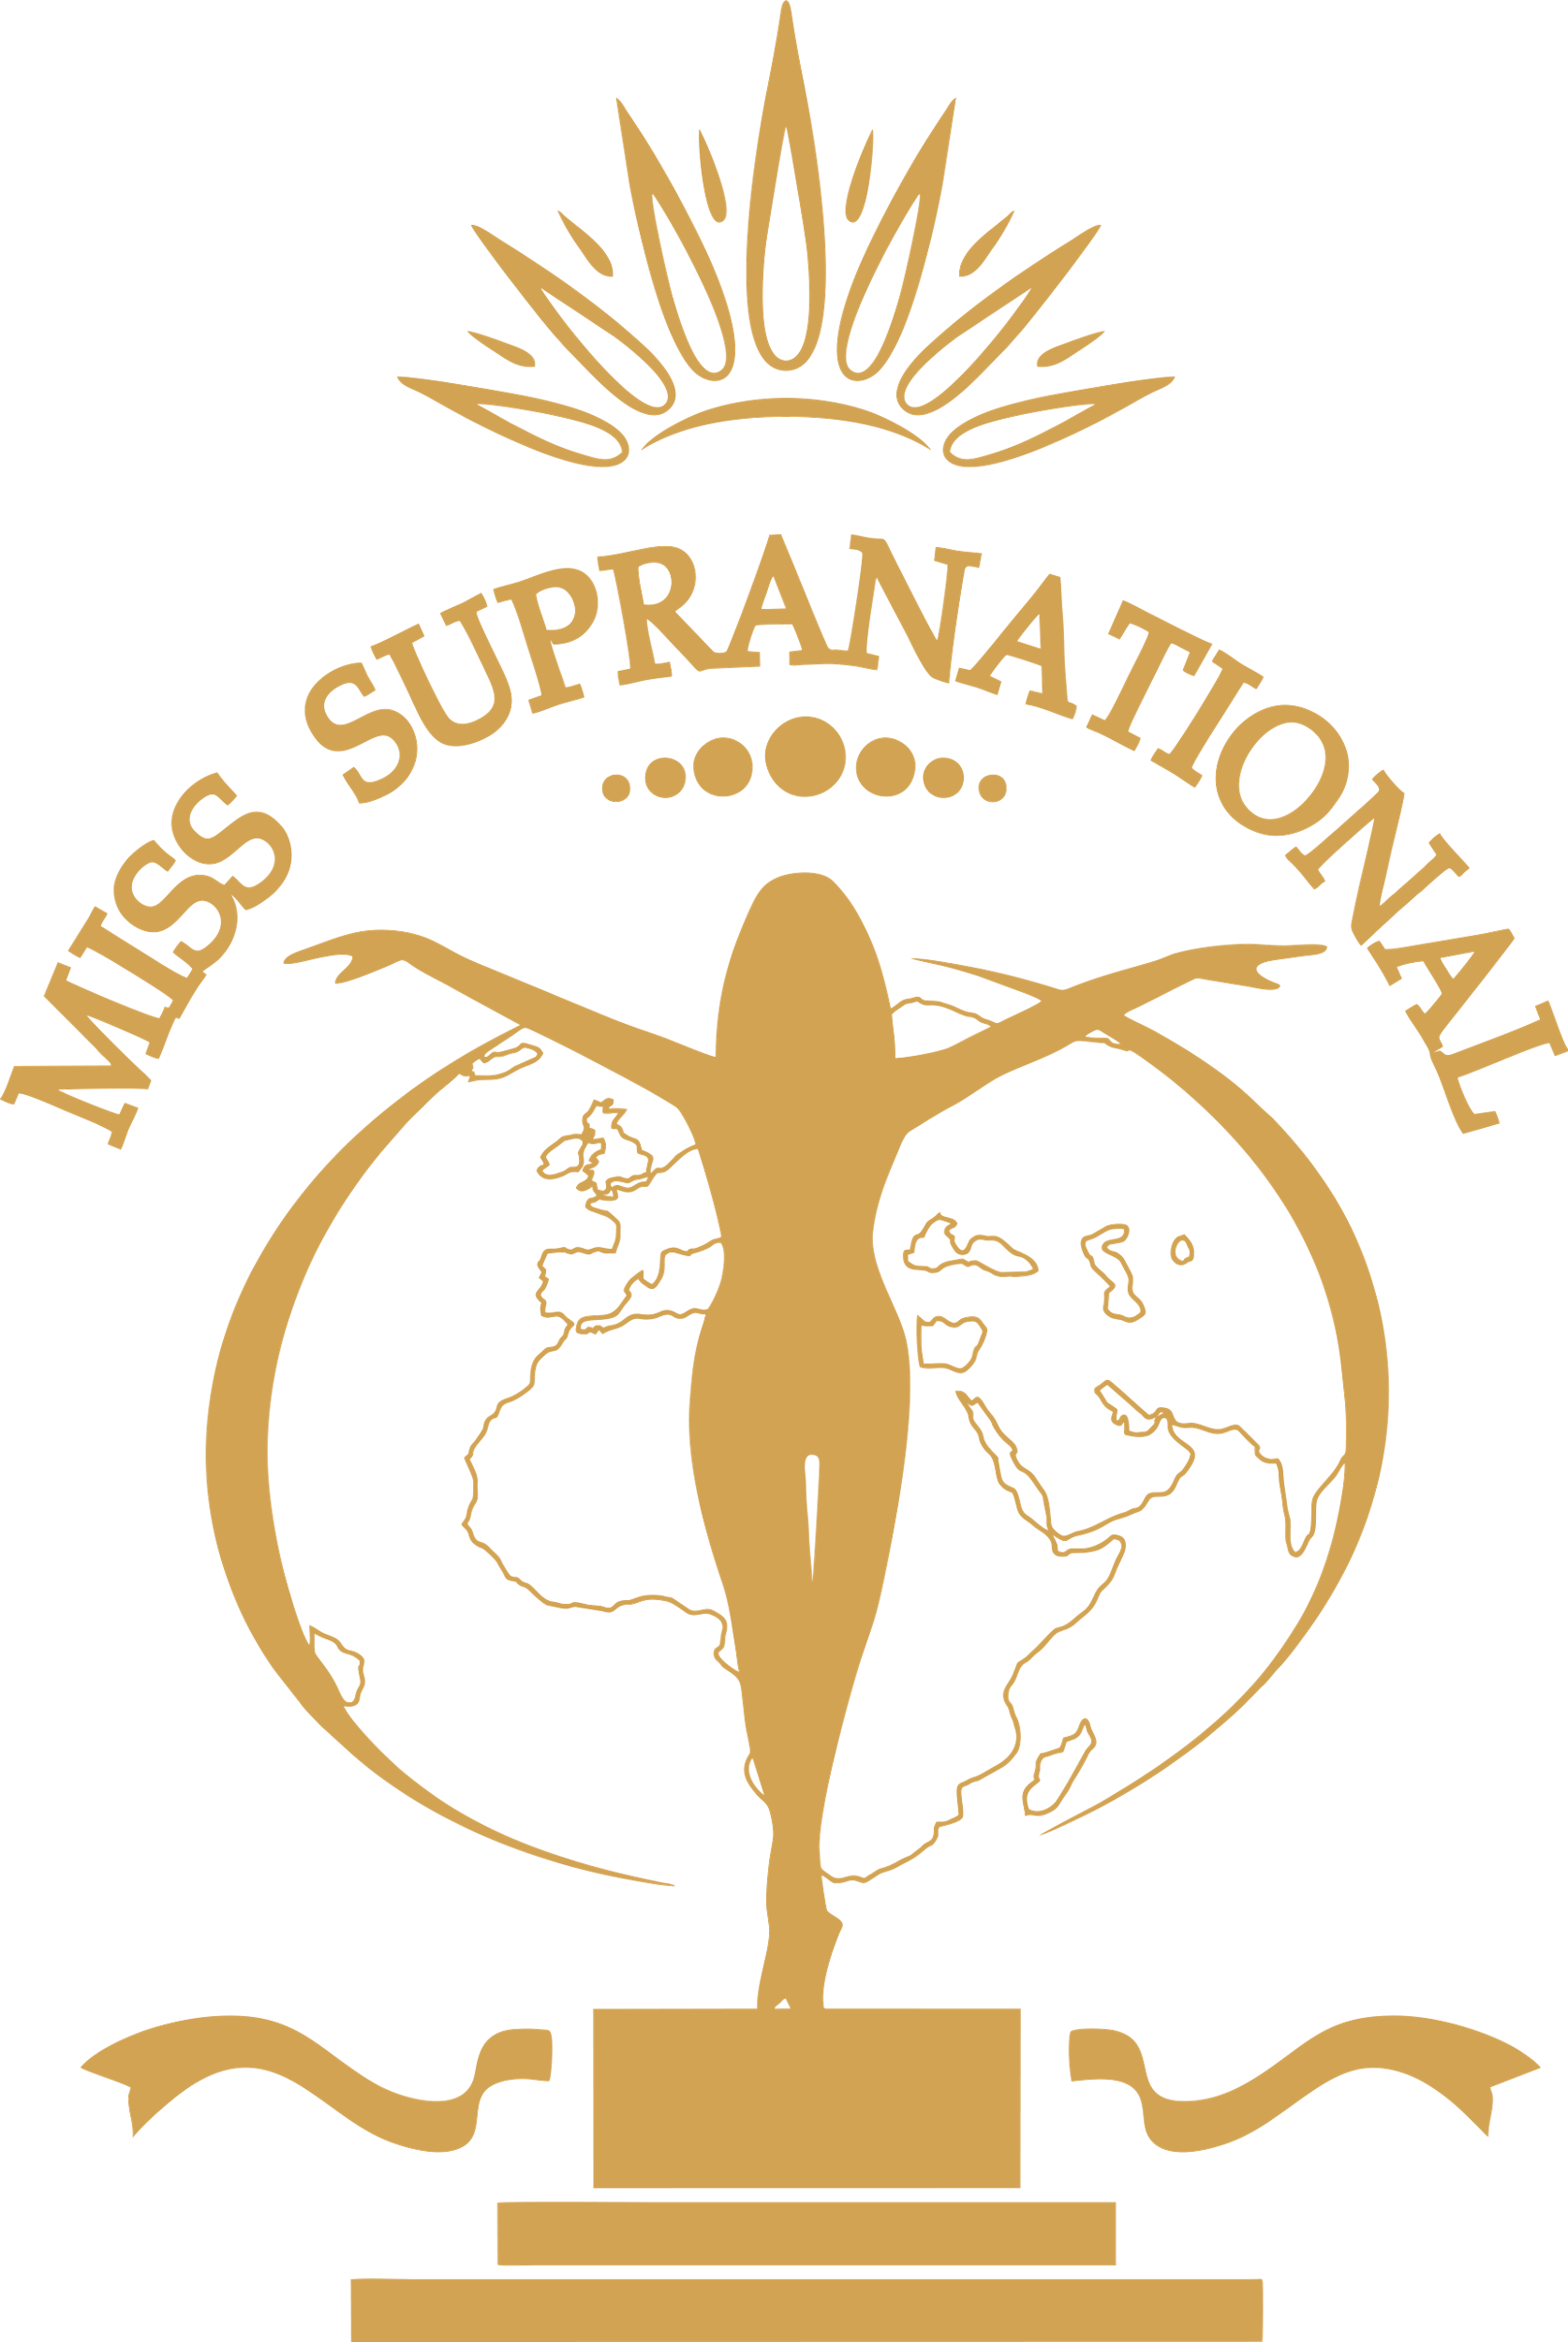 Accede al apartado Miss Supranational de la web